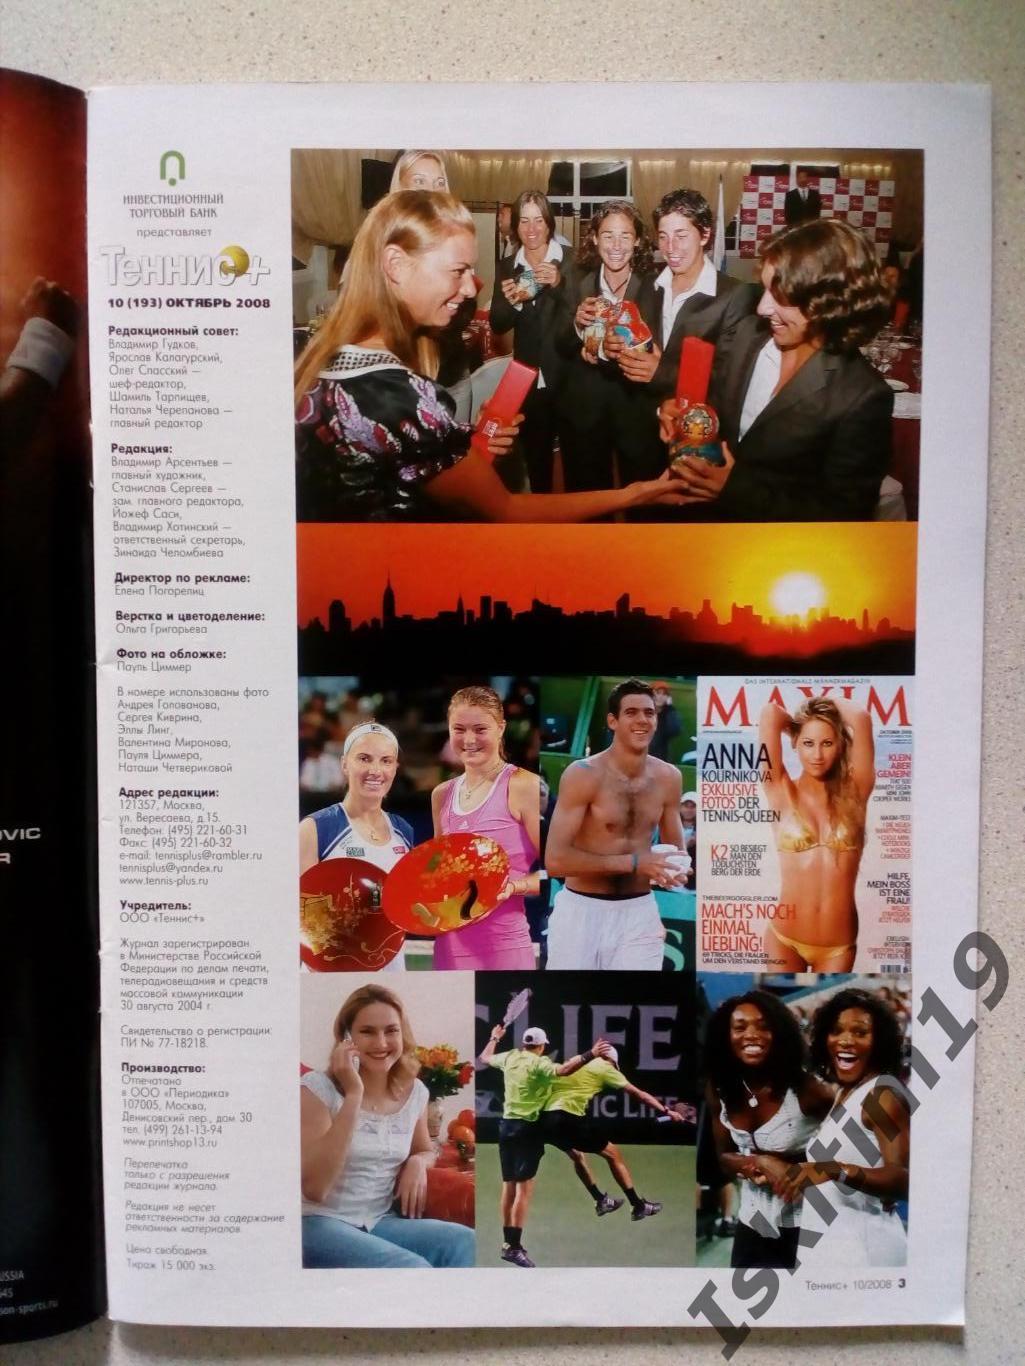 Журнал Теннис+ октябрь 2008 № 10 (193) + каталог Babolat 1